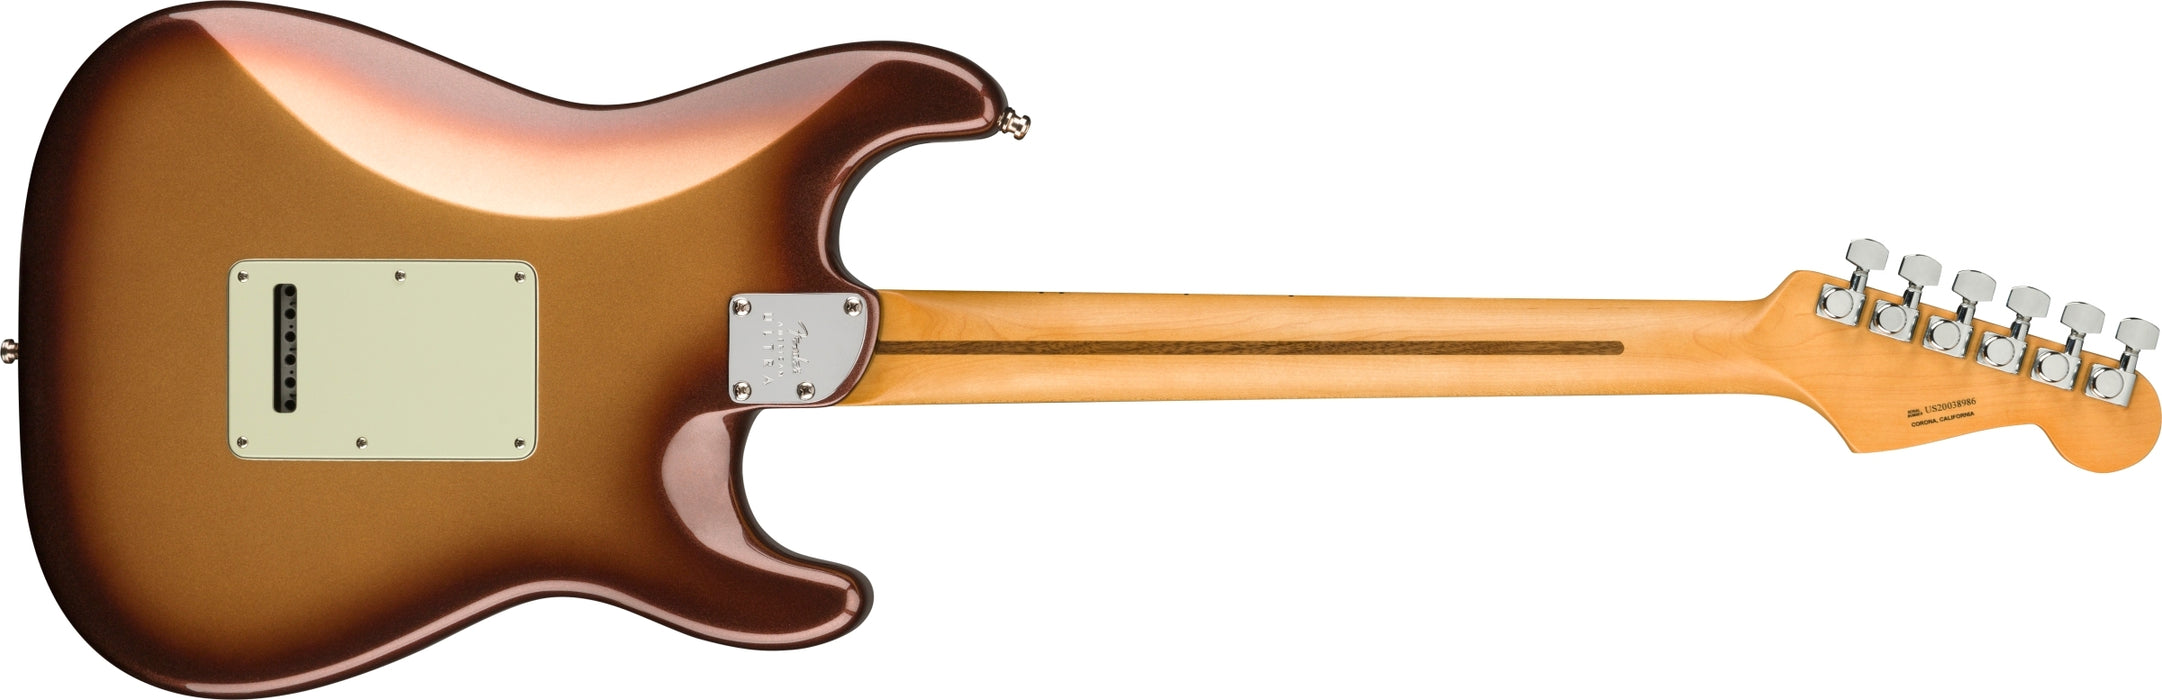 Fender Ultra Stratocaster Left-Handed Maple Fingerboard Mocha Burst Electric Guitar